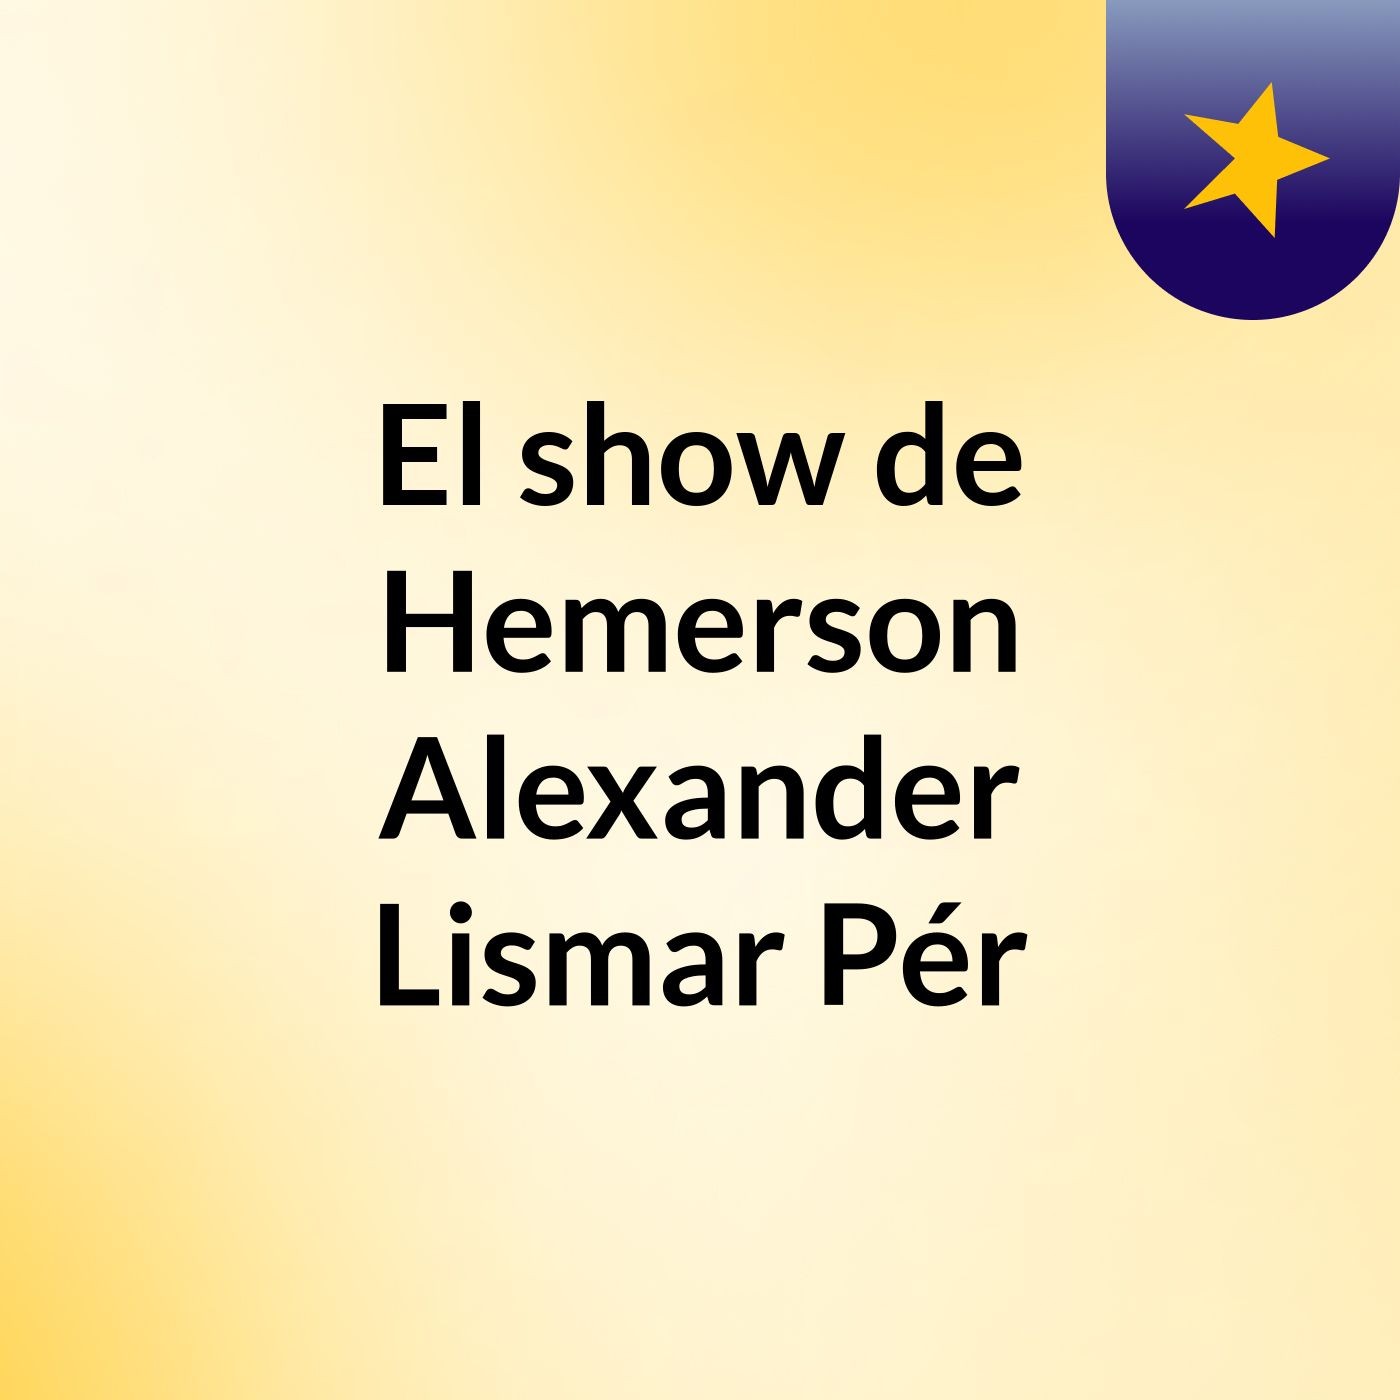 El show de Hemerson Alexander Lismar Pér